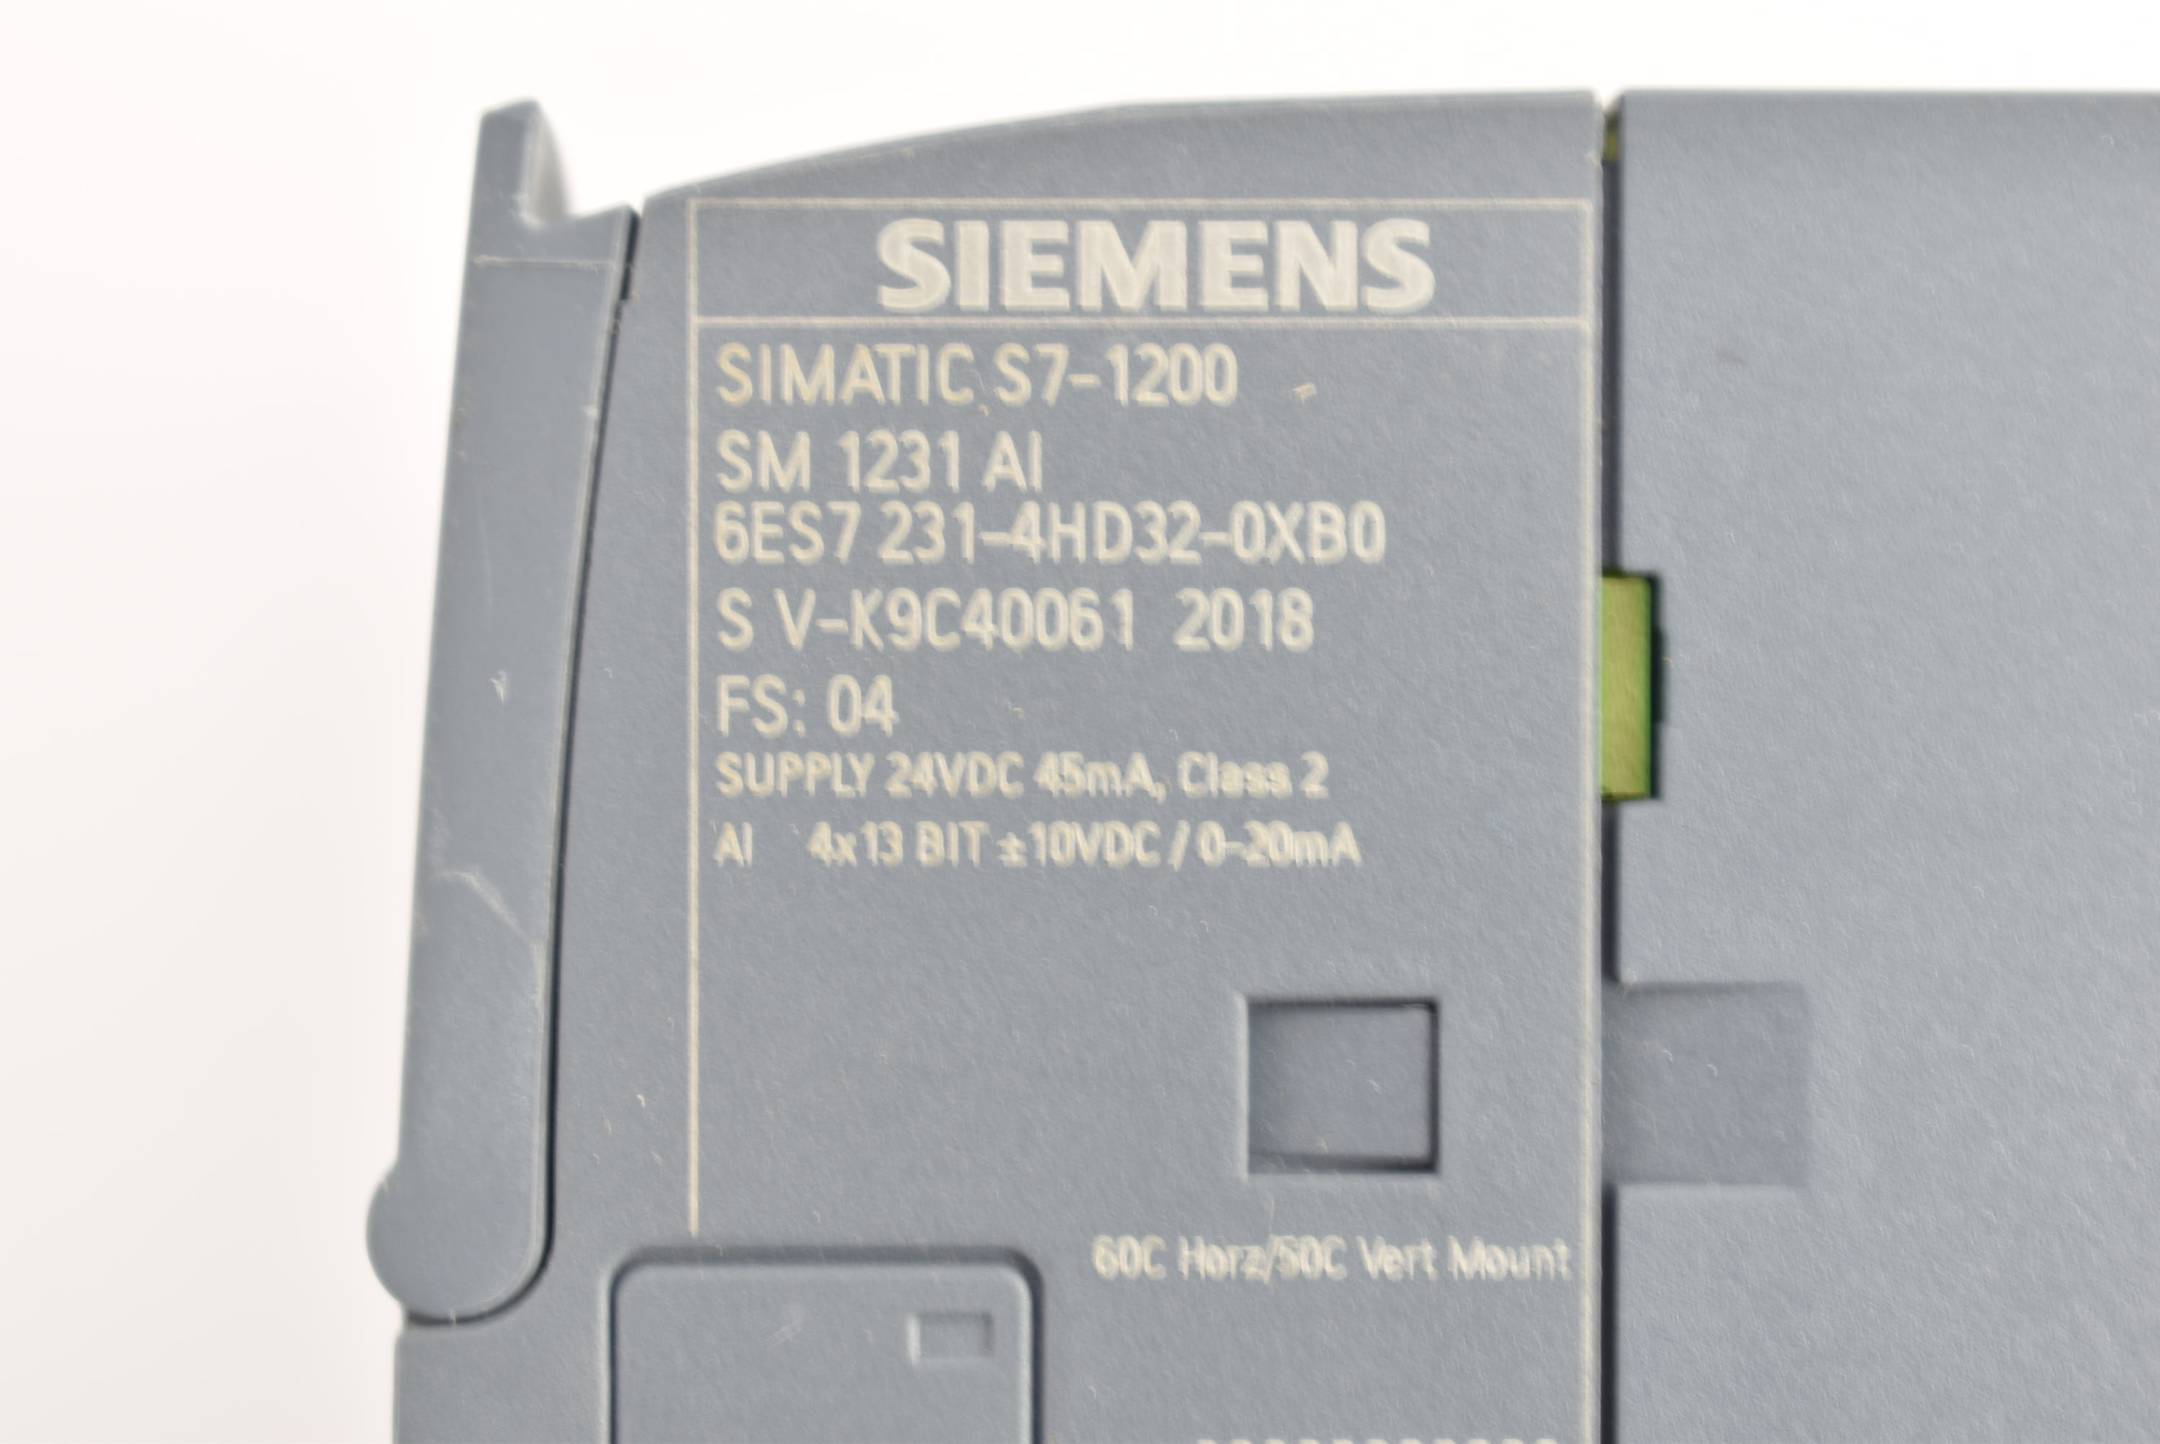 Siemens simatic S7-1200 SM1231 6ES7 231-4HD32-0XB0 ( 6ES7231-4HD32-0XB0 ) FS.4